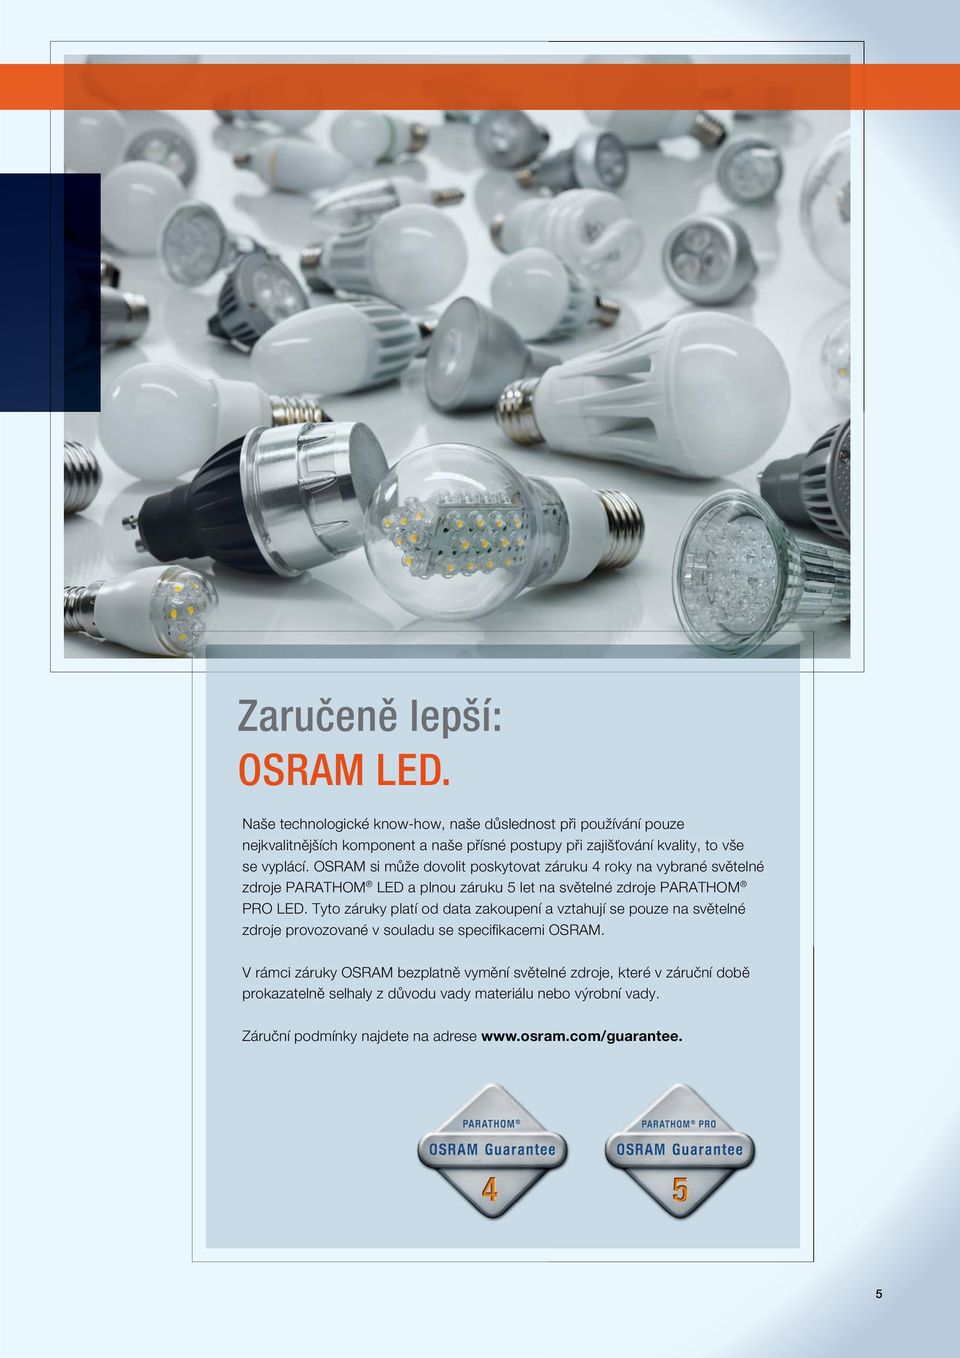 OSRAM si může dovolit poskytovat záruku 4 roky na vybrané světelné zdroje PARATHOM LED a plnou záruku 5 let na světelné zdroje PARATHOM PRO LED.